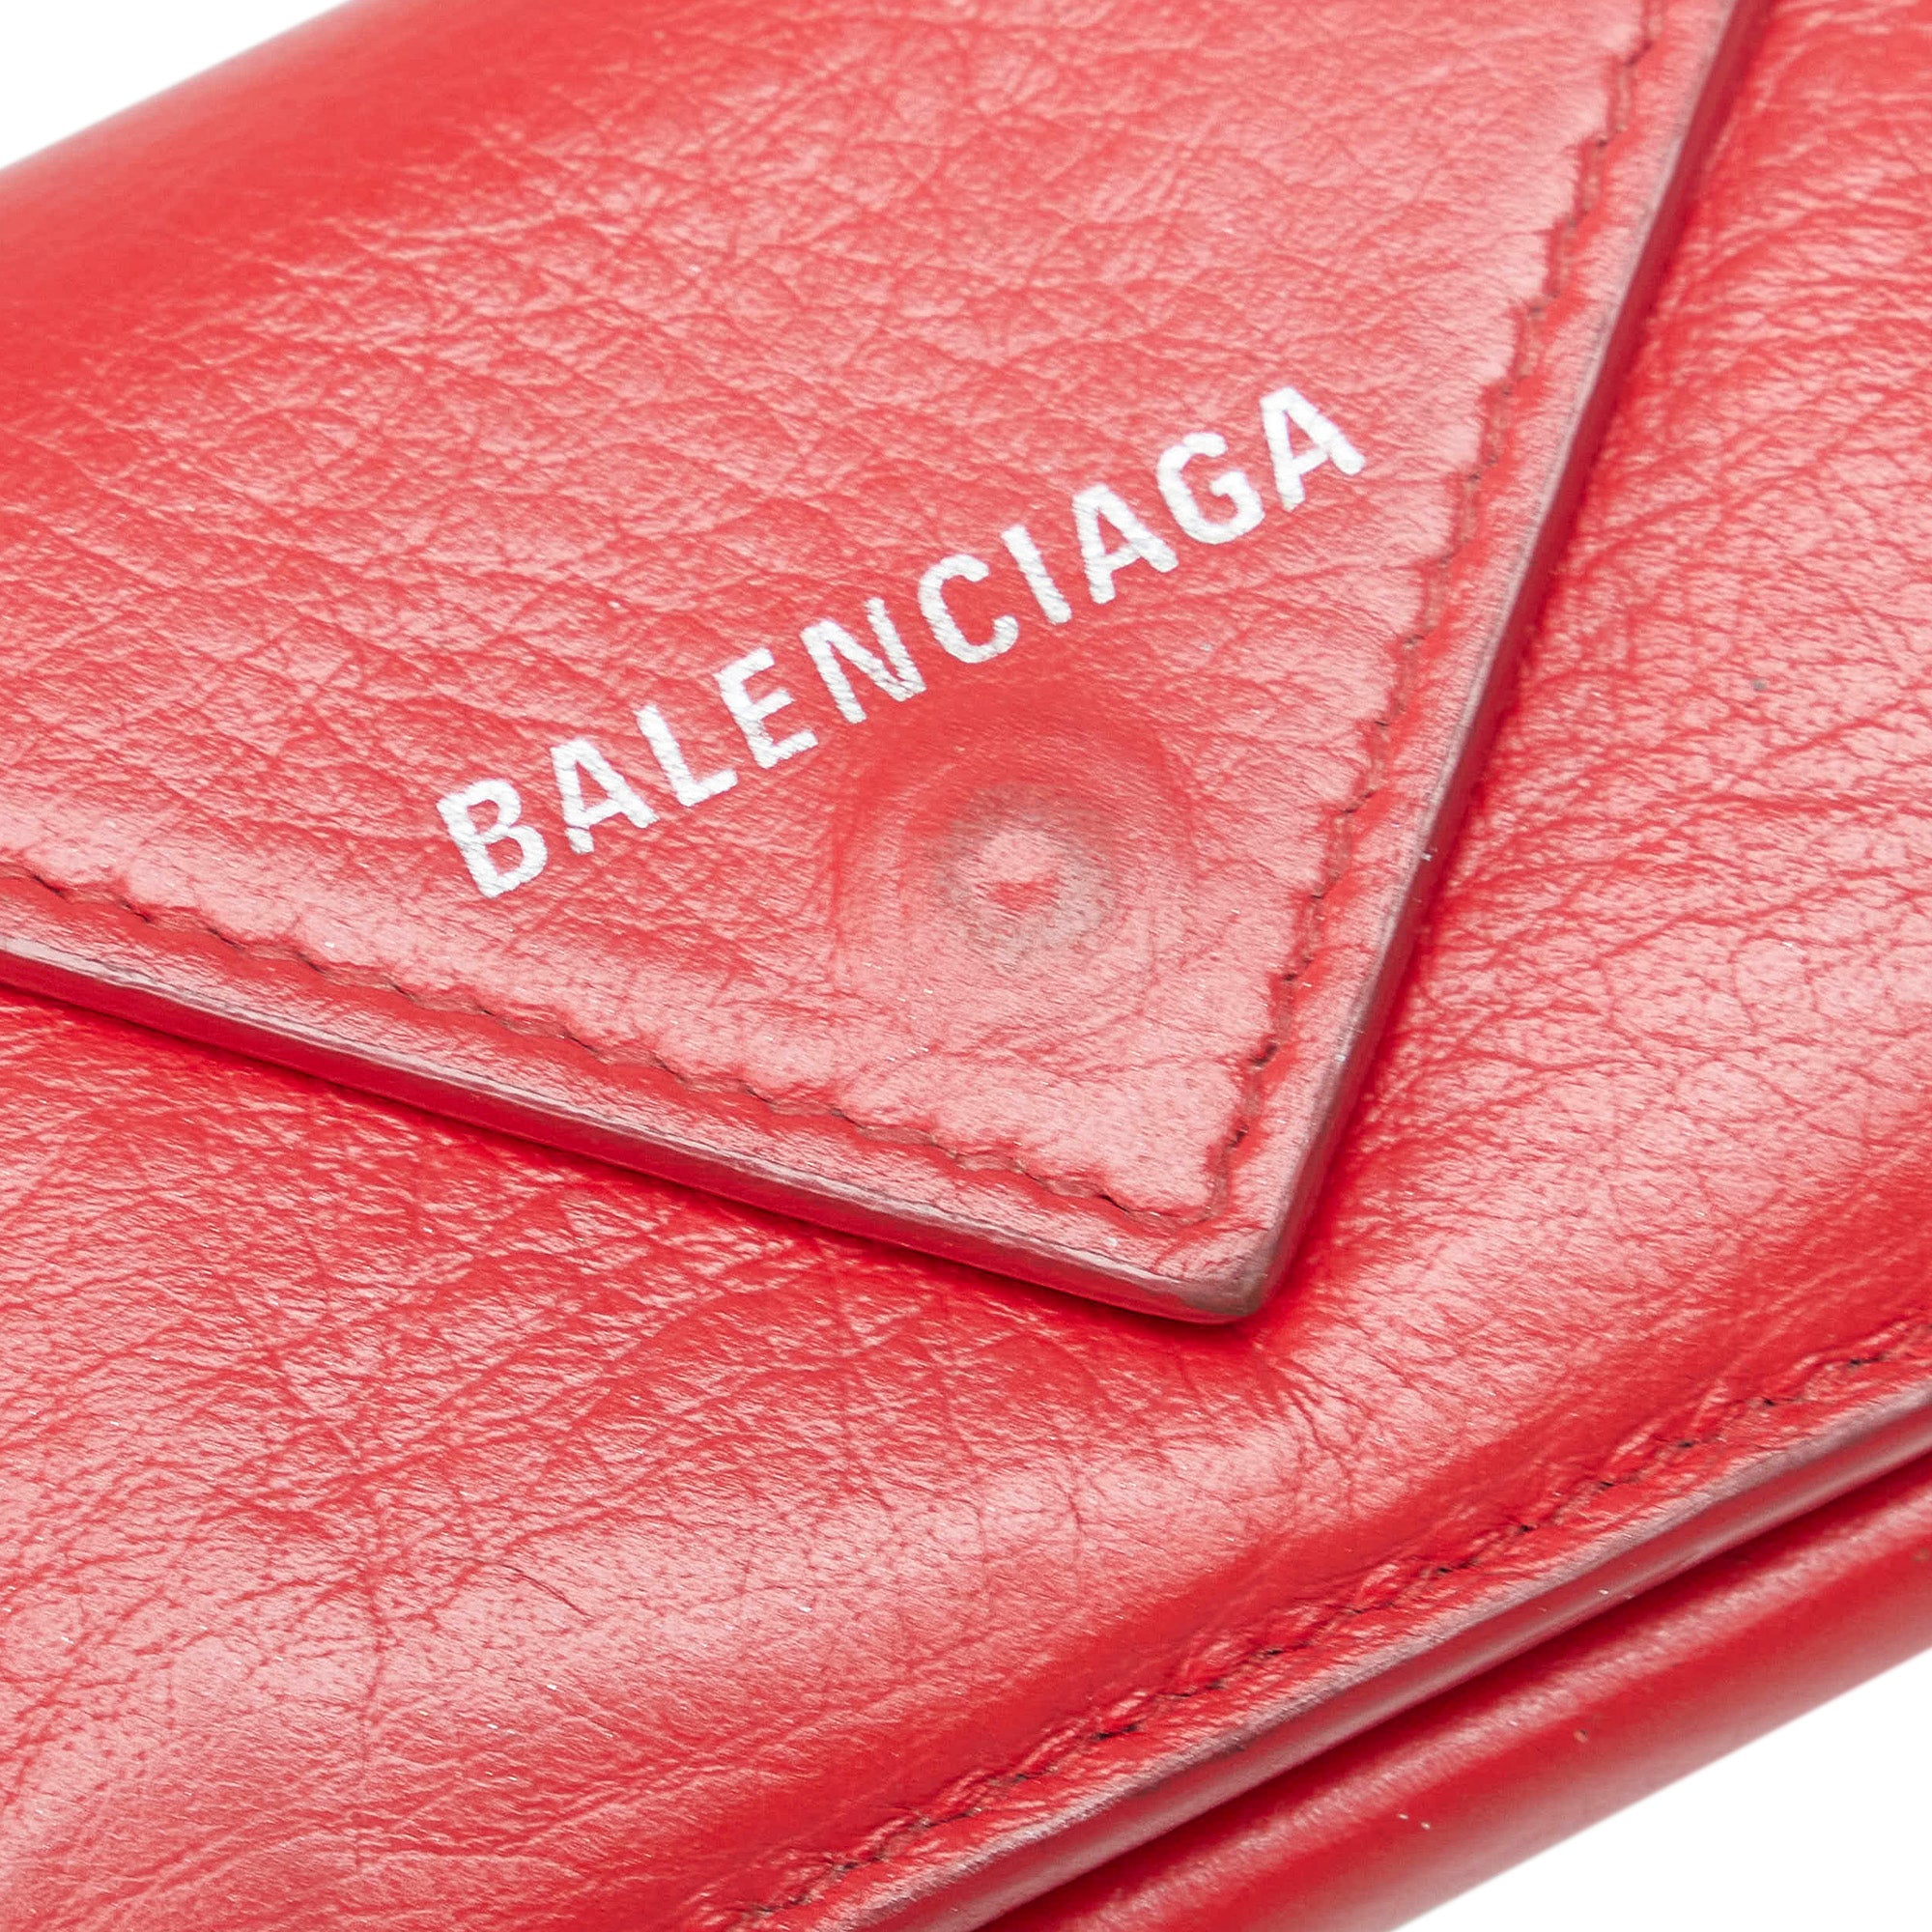 Balenciaga Papier Mini Leather Compact Wallet